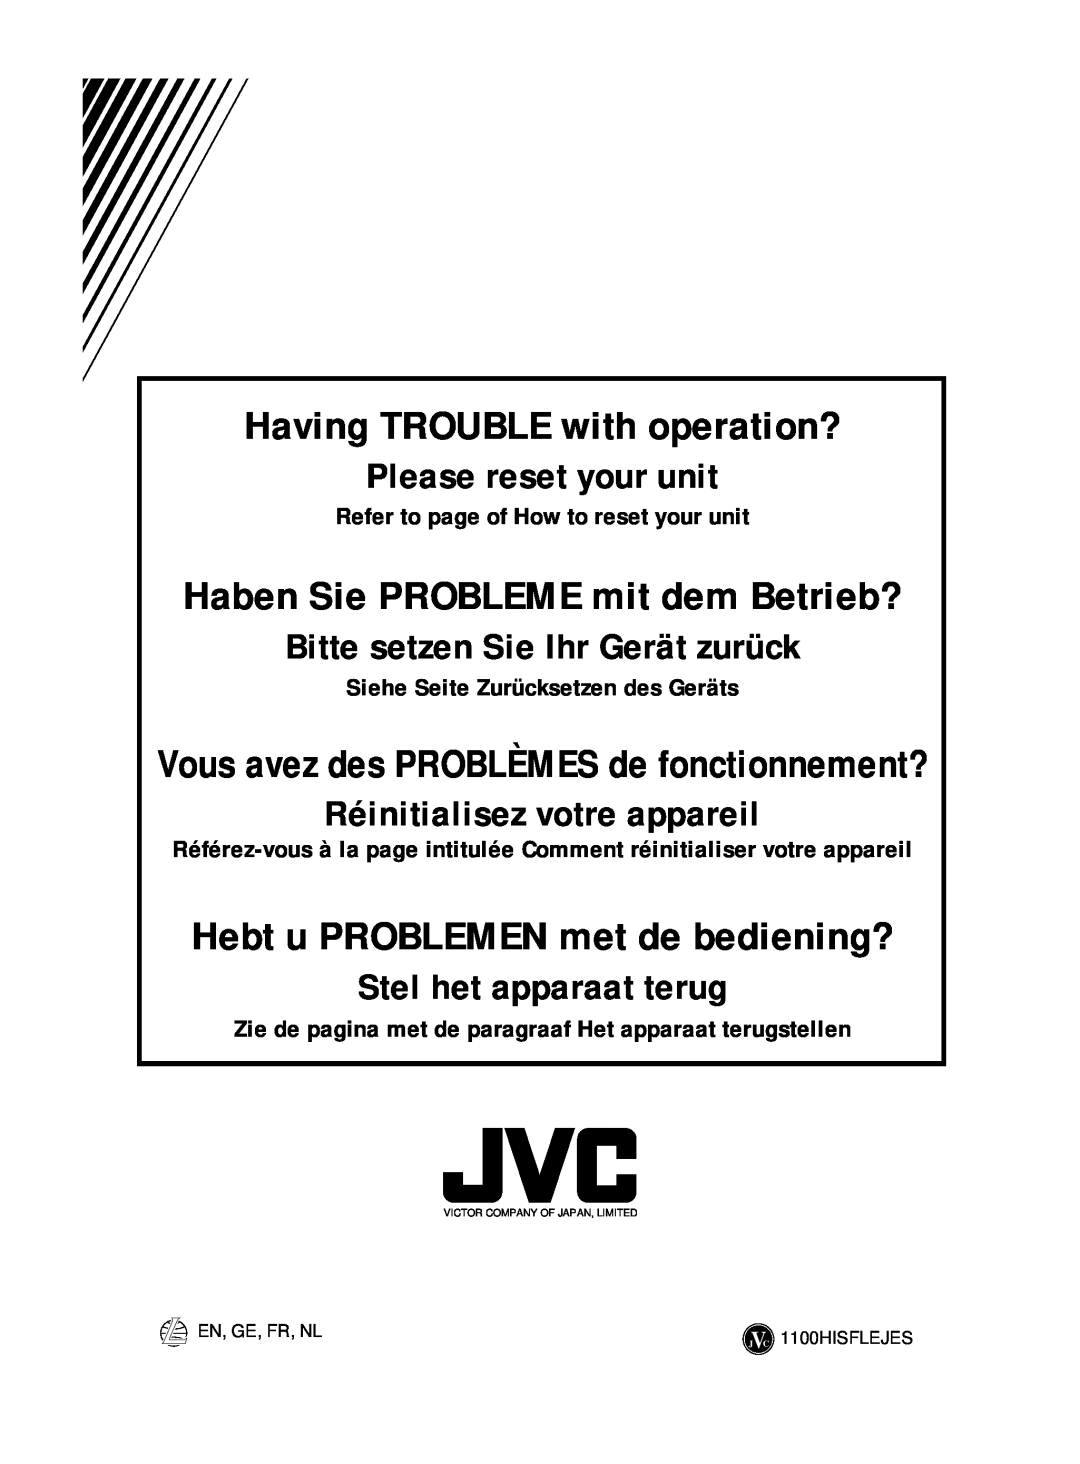 JVC KD-S713R, KD-S711R Haben Sie PROBLEME mit dem Betrieb?, Hebt u PROBLEMEN met de bediening?, Please reset your unit 